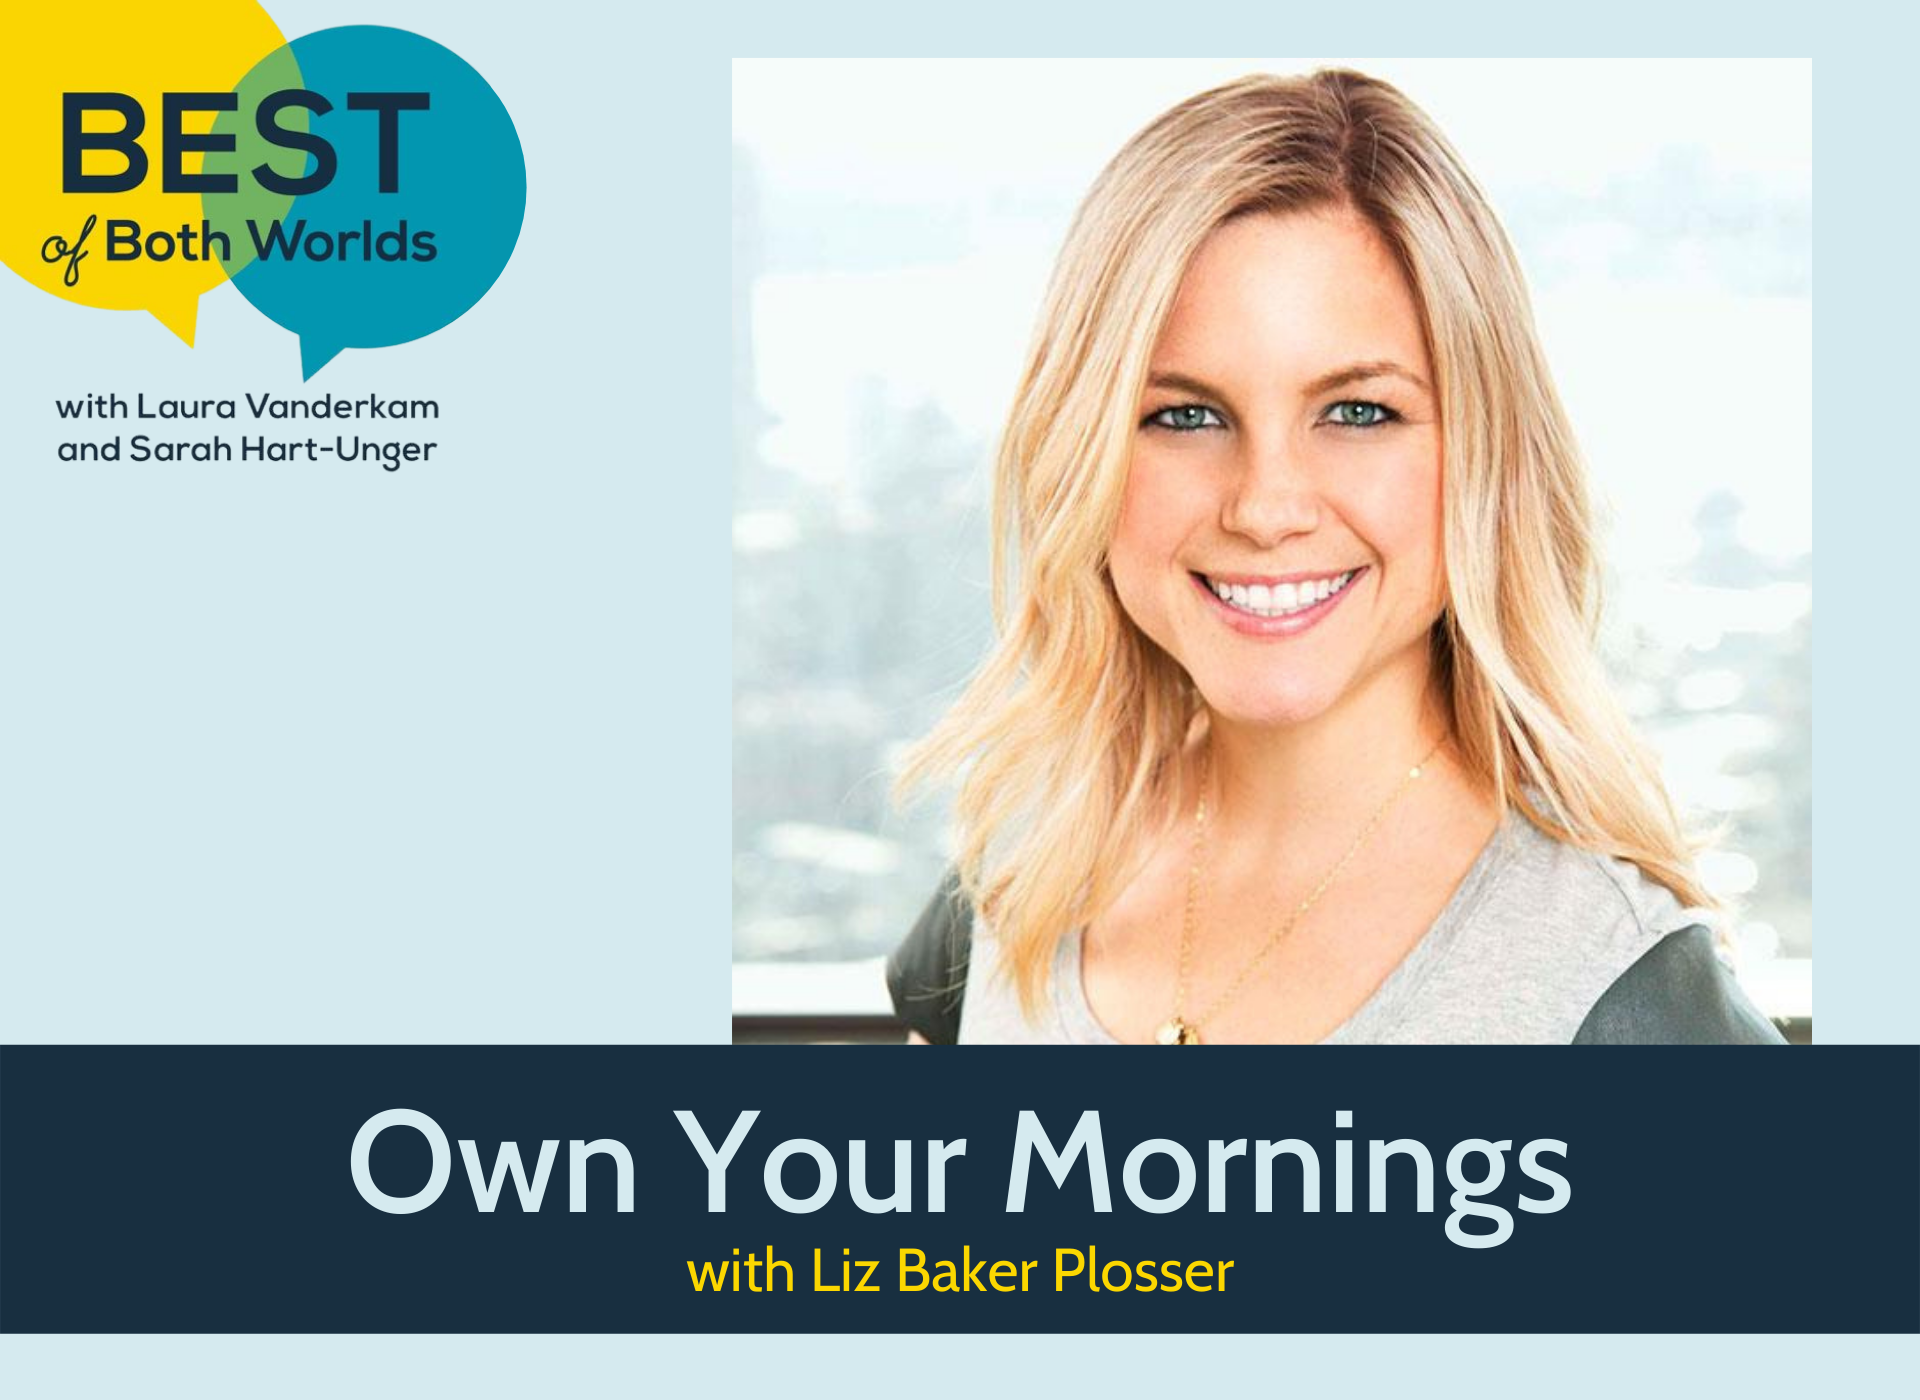 Best of Both Worlds podcast: Own your mornings with Liz Baker Plosser -  Laura Vanderkam